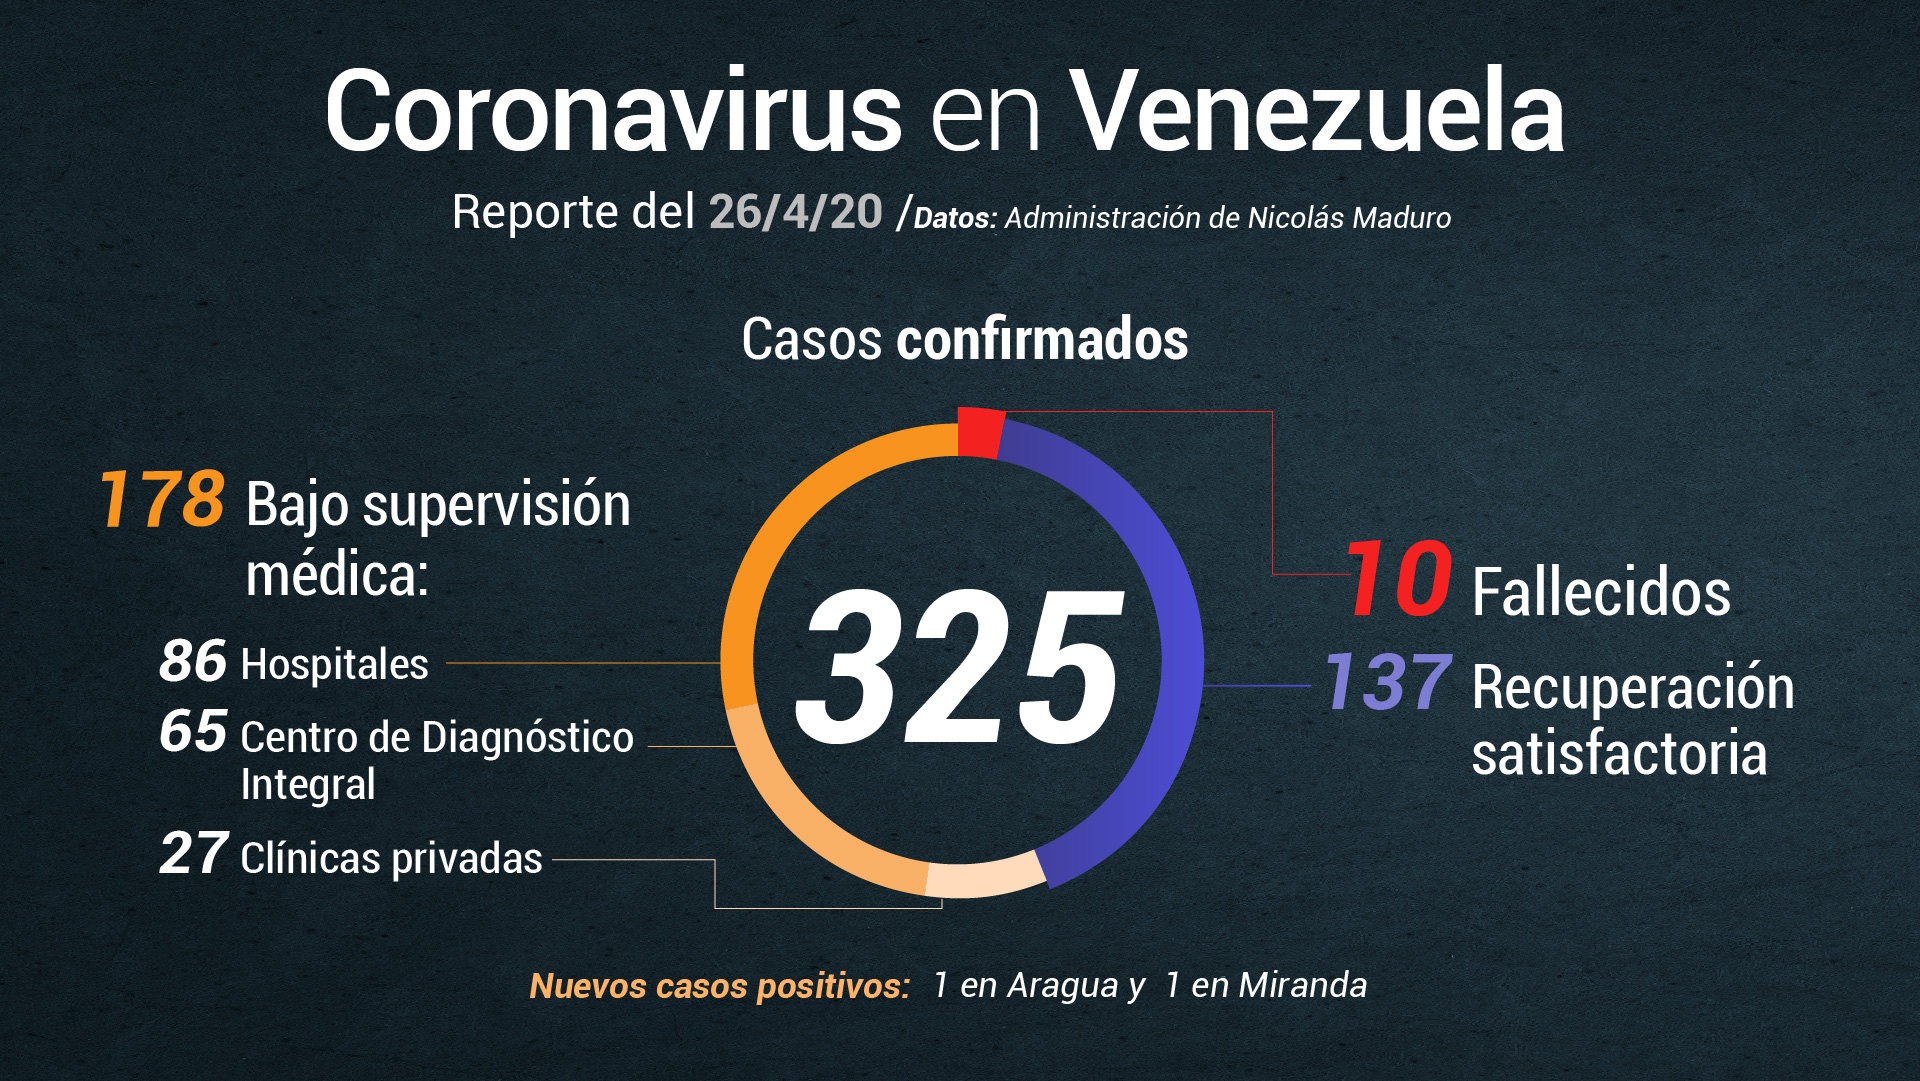 Nicolás Maduro confirma 2 casos de COVID-19